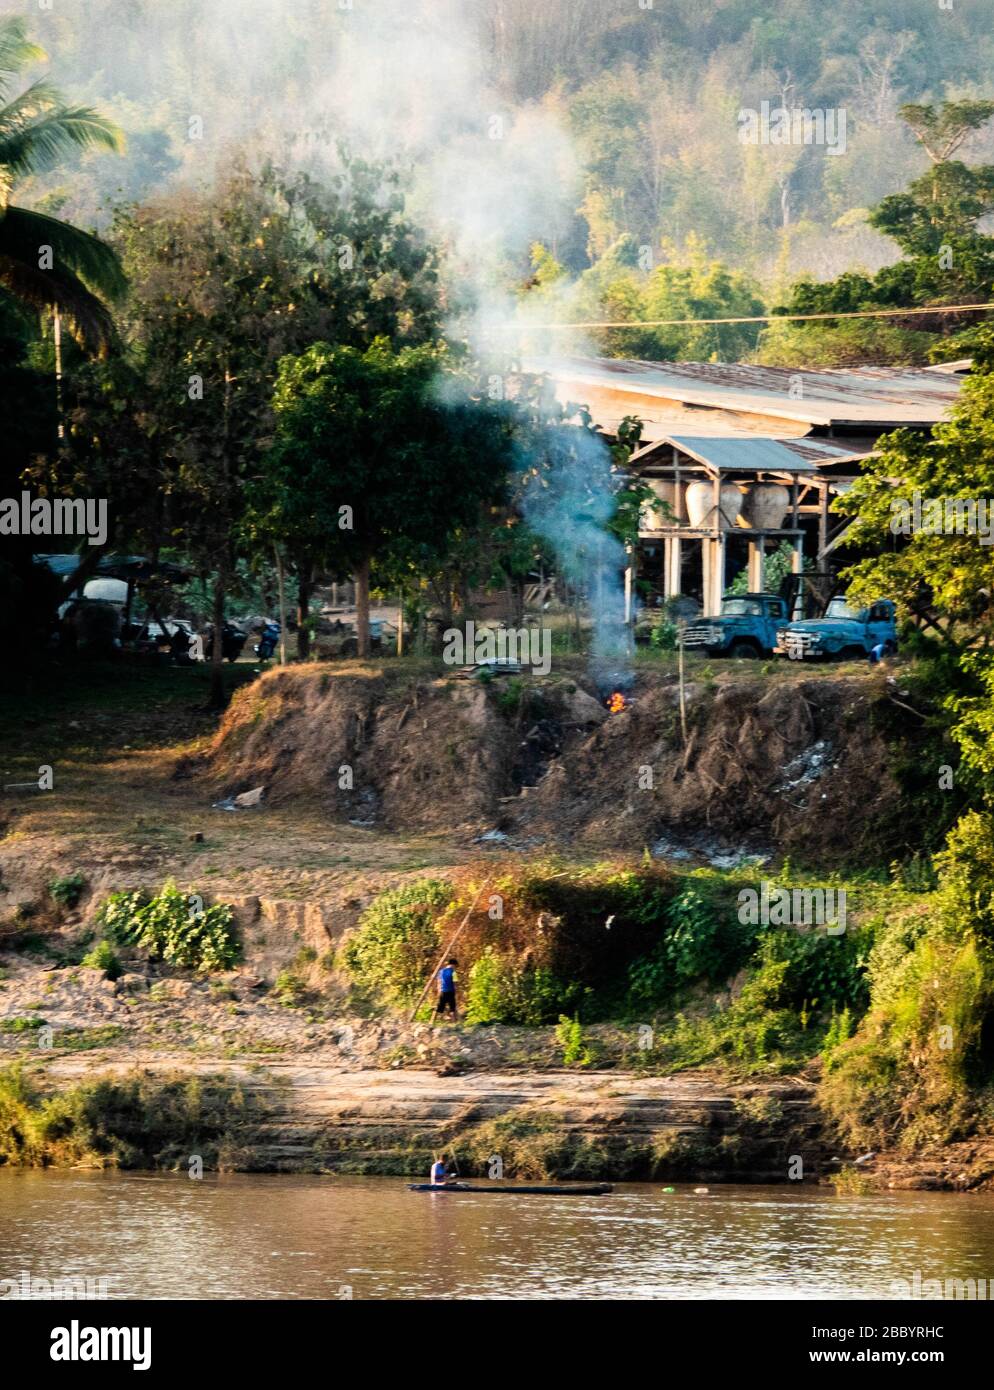 Attraversato il fiume Mekong da Chiang Khan nella Tailandia del Nord-Est. Questo sembra una scena bucolica villaggio, ma ci sono strani contenitori di terracotta su st Foto Stock